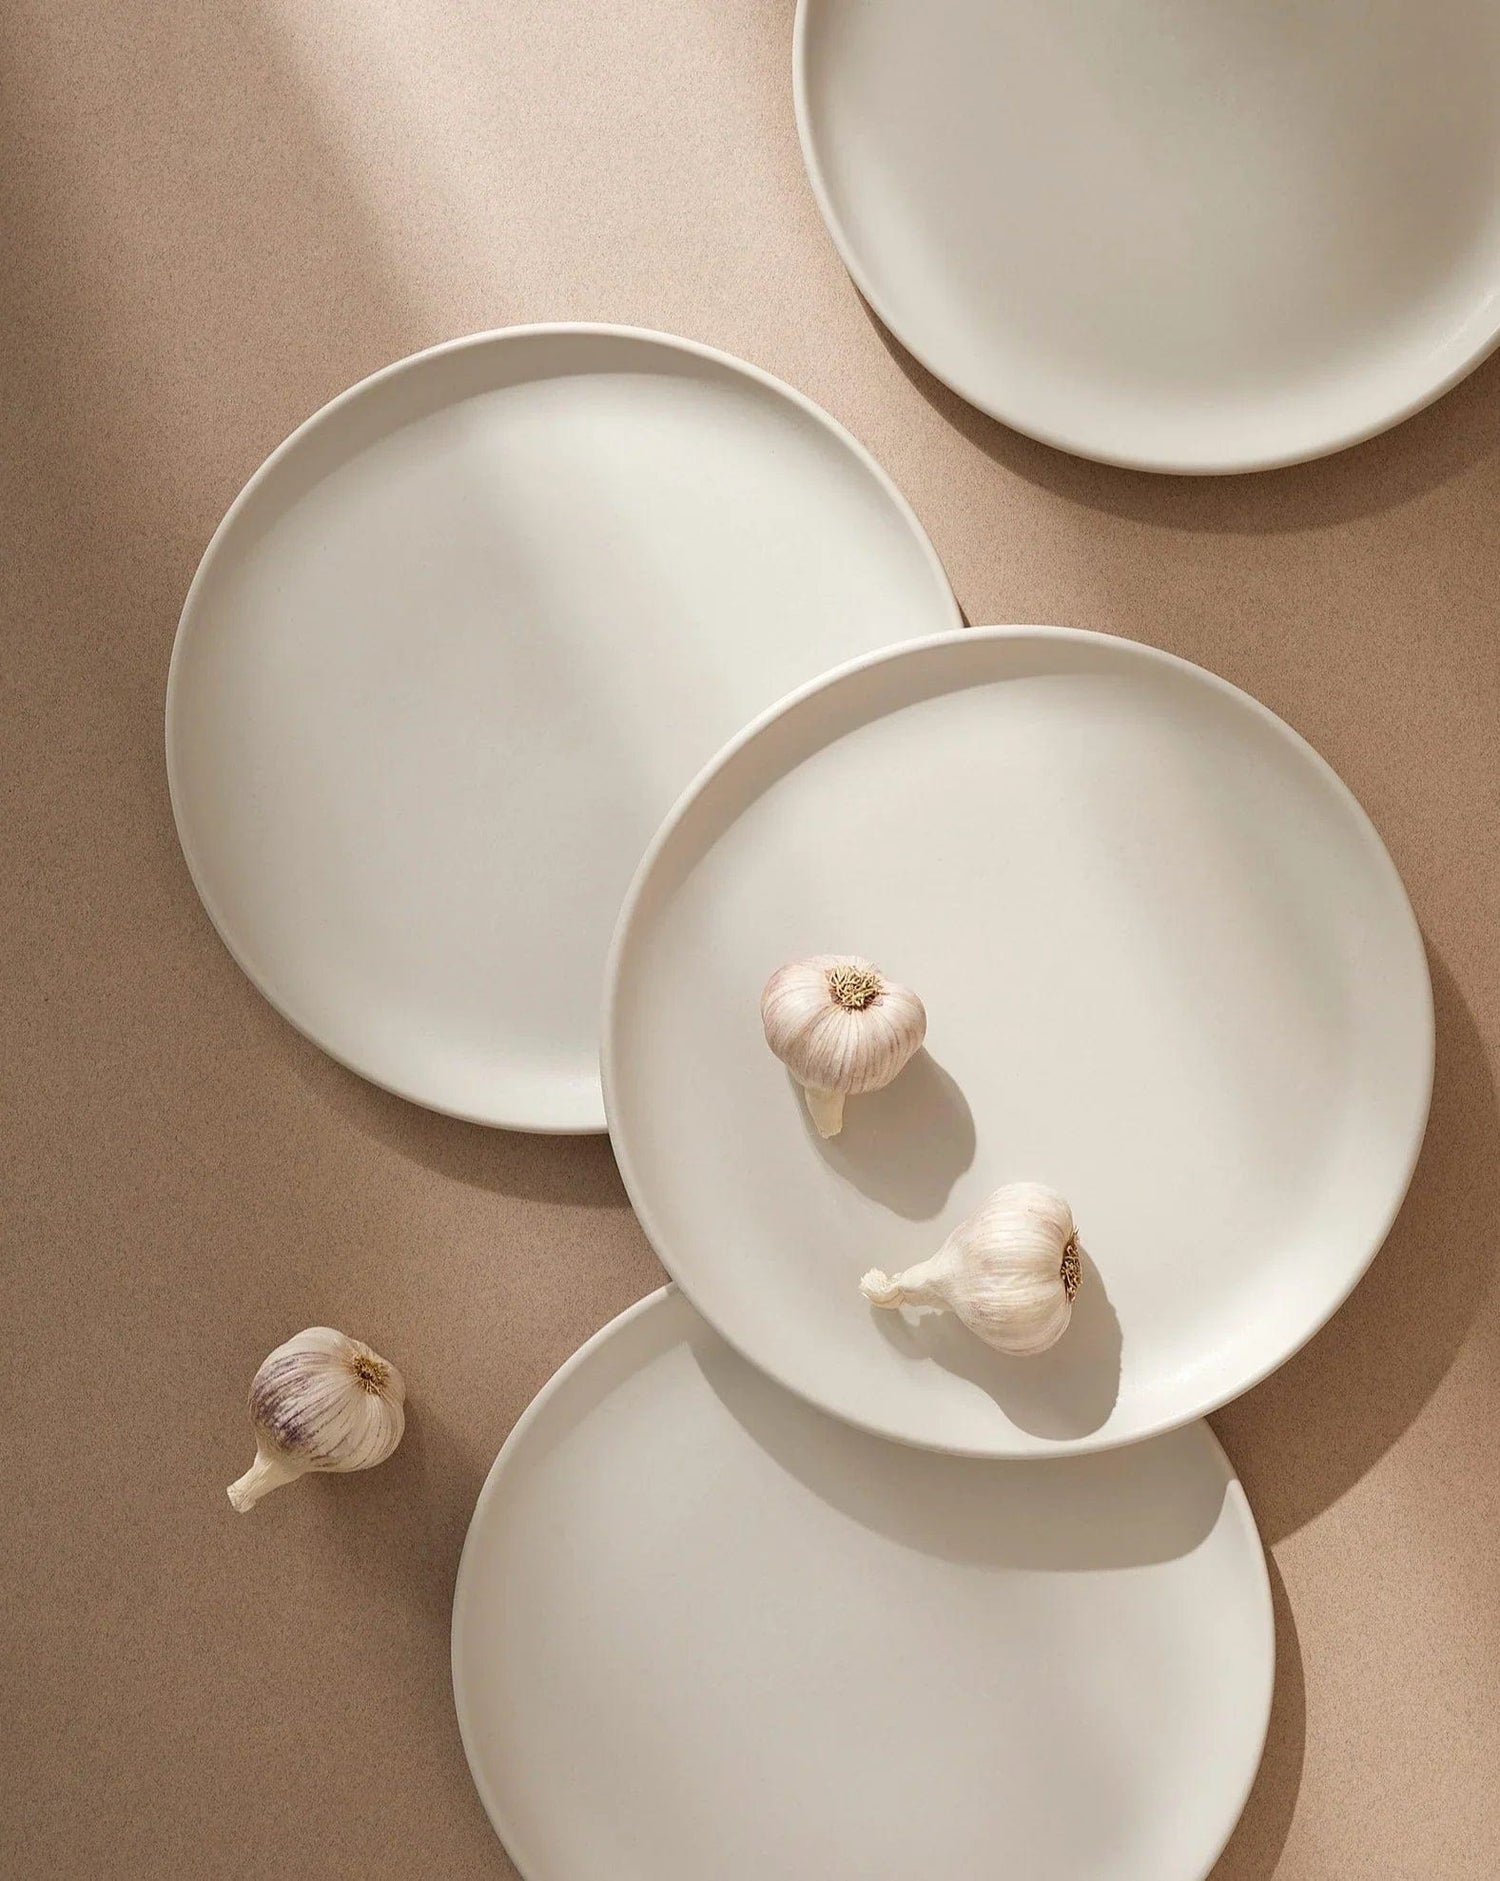 Japandi Tableware 12pc Dinnerware set - Dinner Plate, Side Plate + Bowl - Matte White